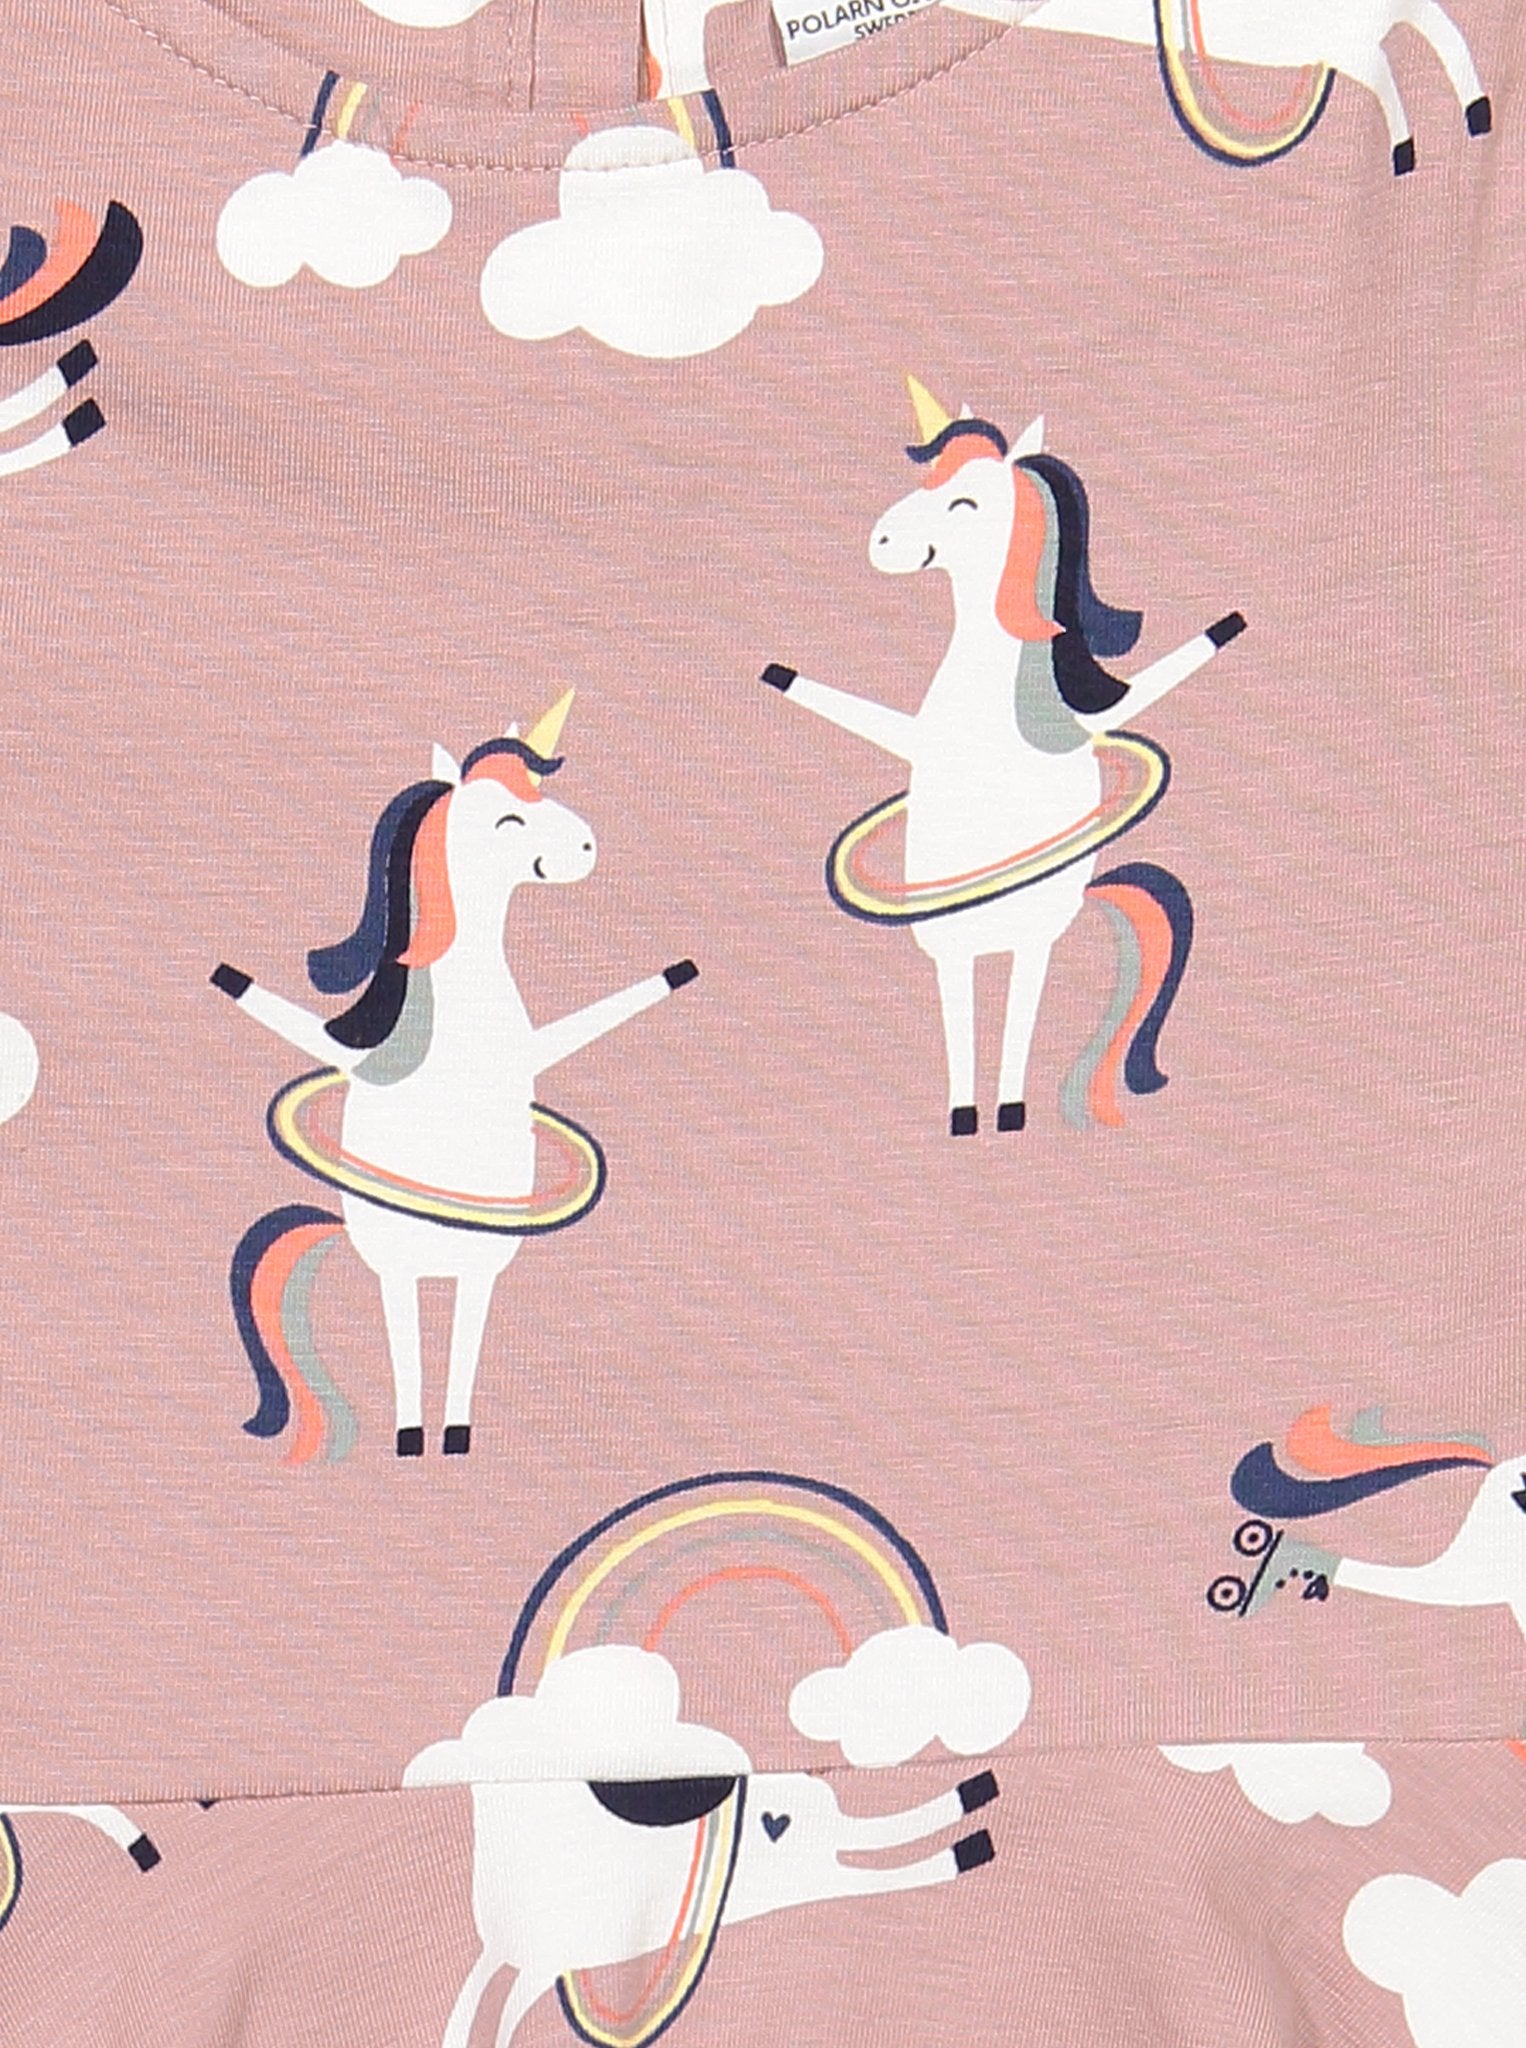 Girls Pink Kids Organic Cotton Unicorn Dress